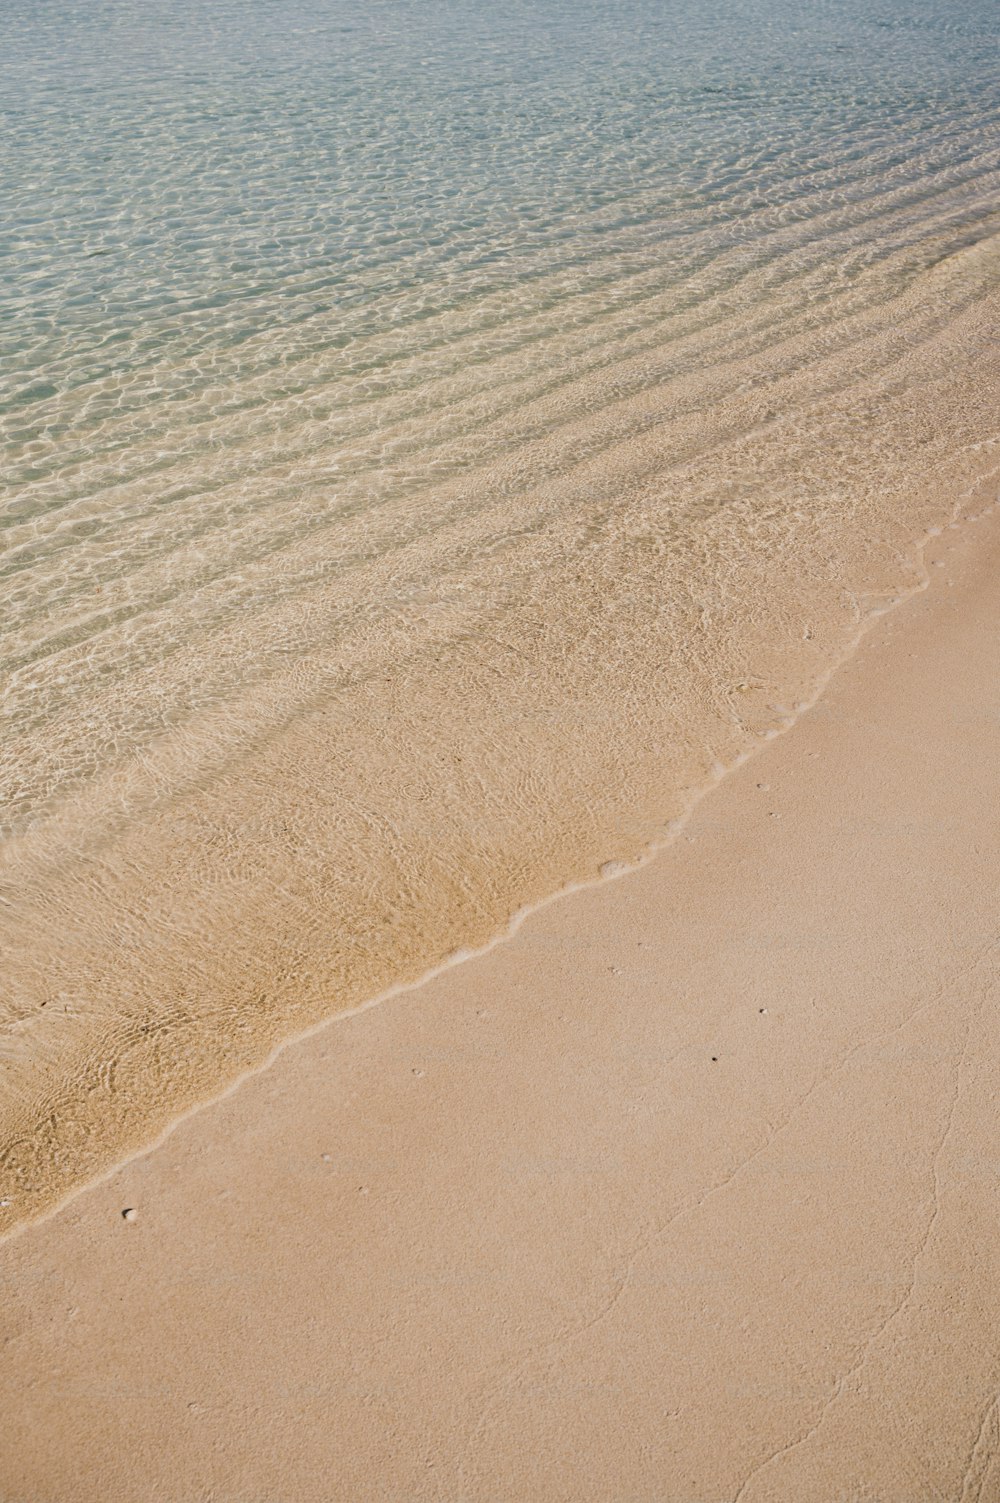 배경에 물이 있는 모래 해변